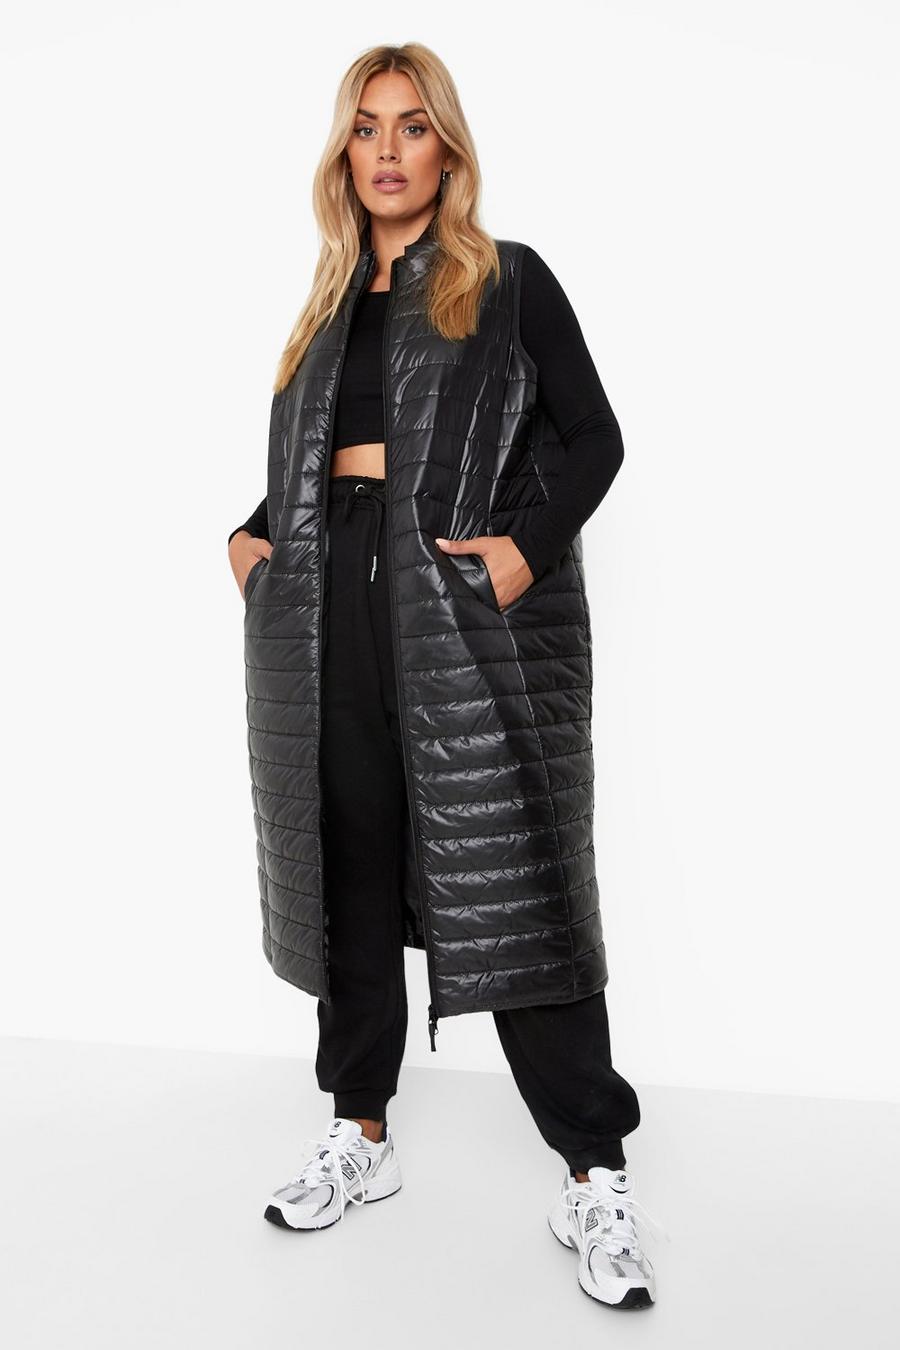 Plus Size Winter Coats, Plus Size Womens Winter Coats